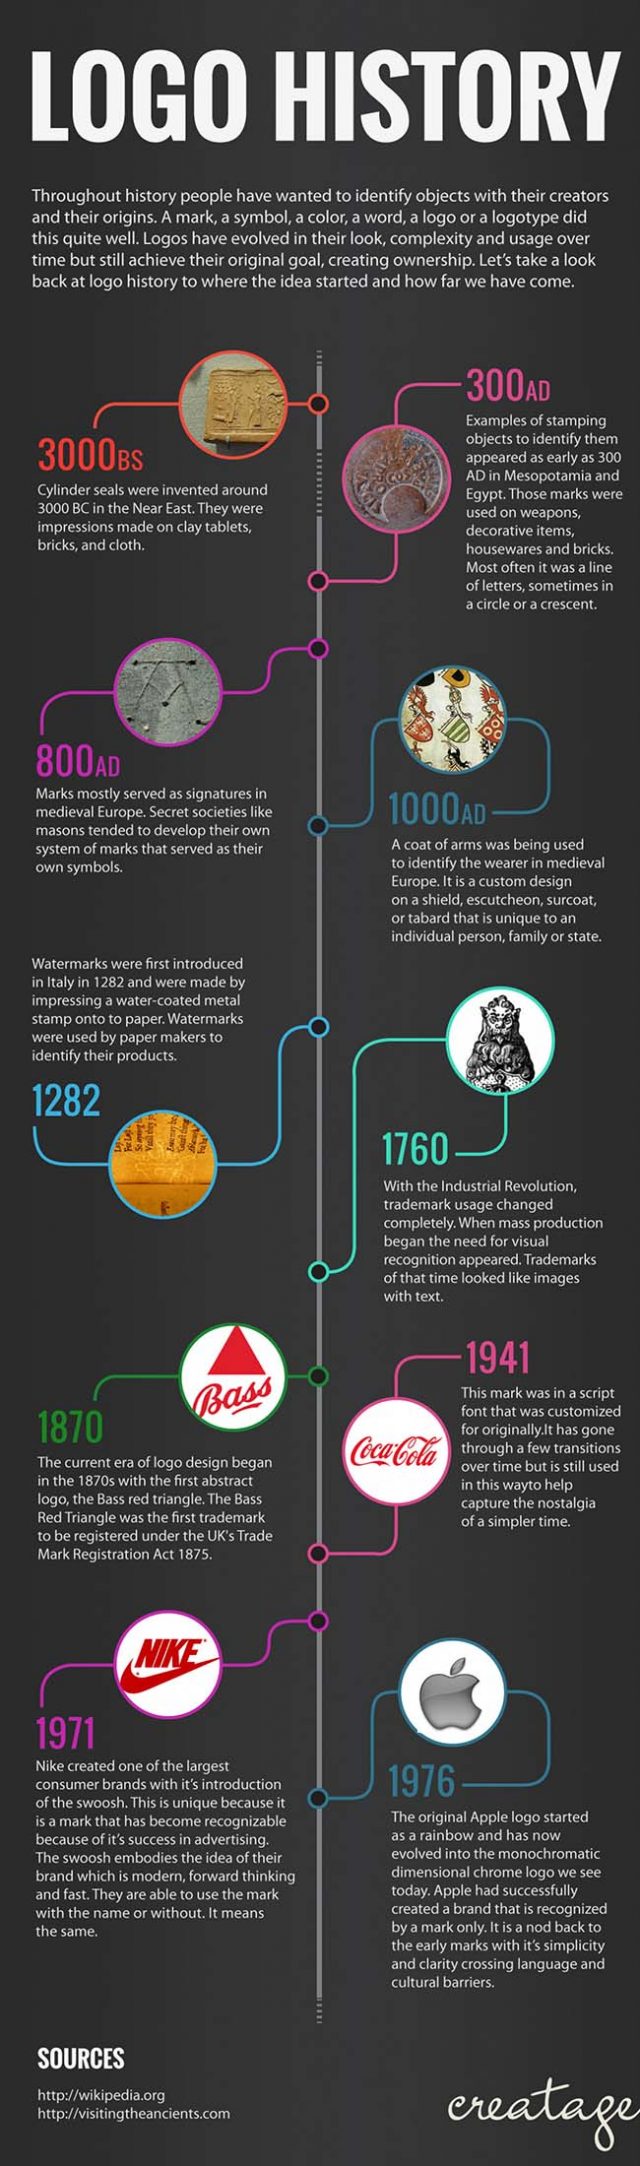 ההיסטוריה של הלוגו וחשיבותו בתהליך המיתוג